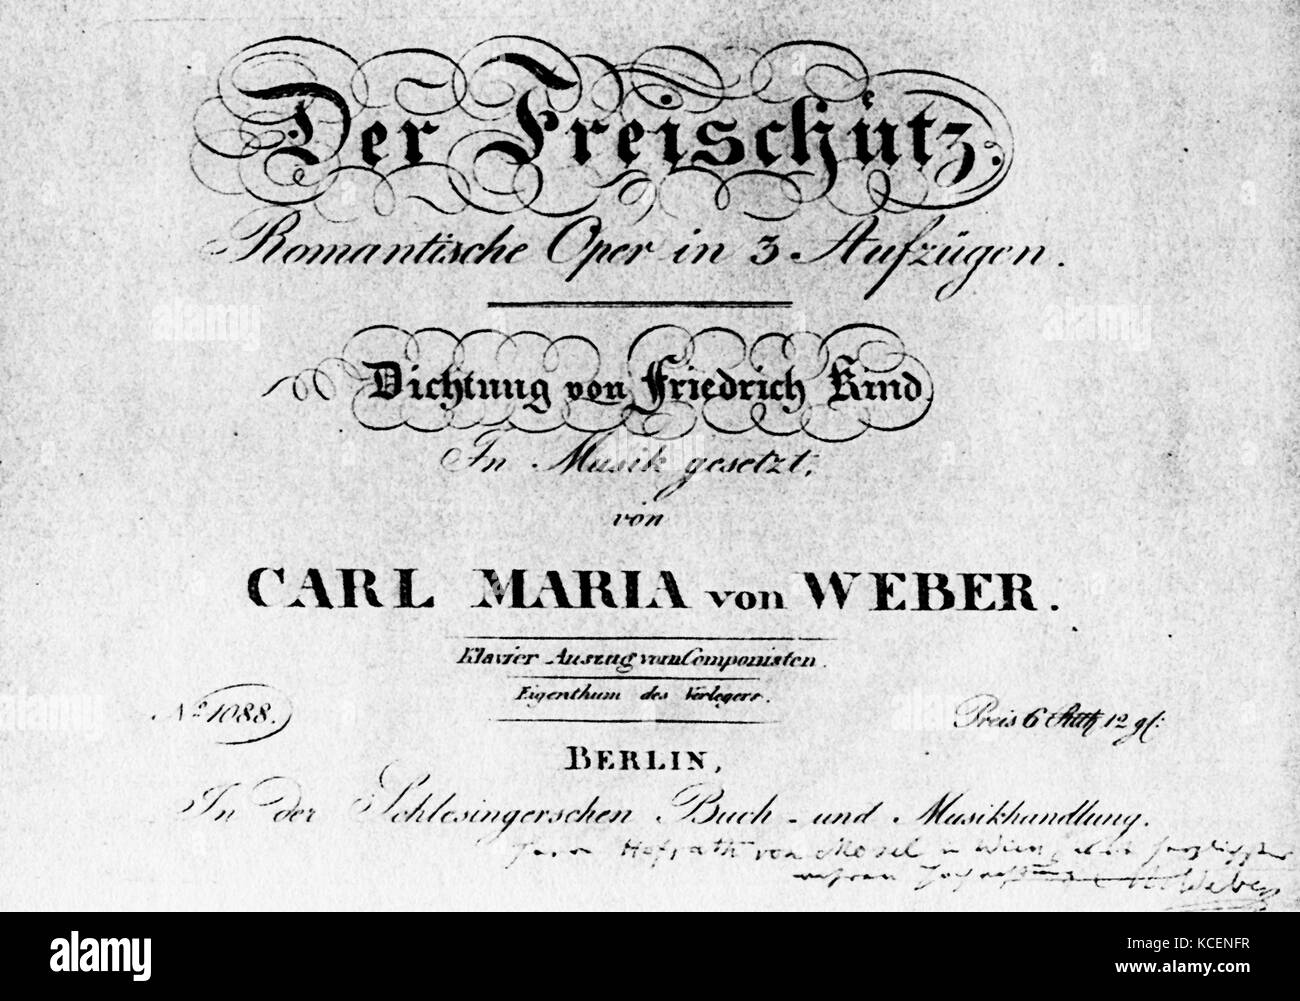 Titelseite der Deutschen Oper 'Der Freischütz' (Shooter) von Carl Maria von Weber (1786-1826) ein deutscher Komponist, Dirigent, Pianist, Gitarrist, und Kritiker. Vom 19. Jahrhundert Stockfoto